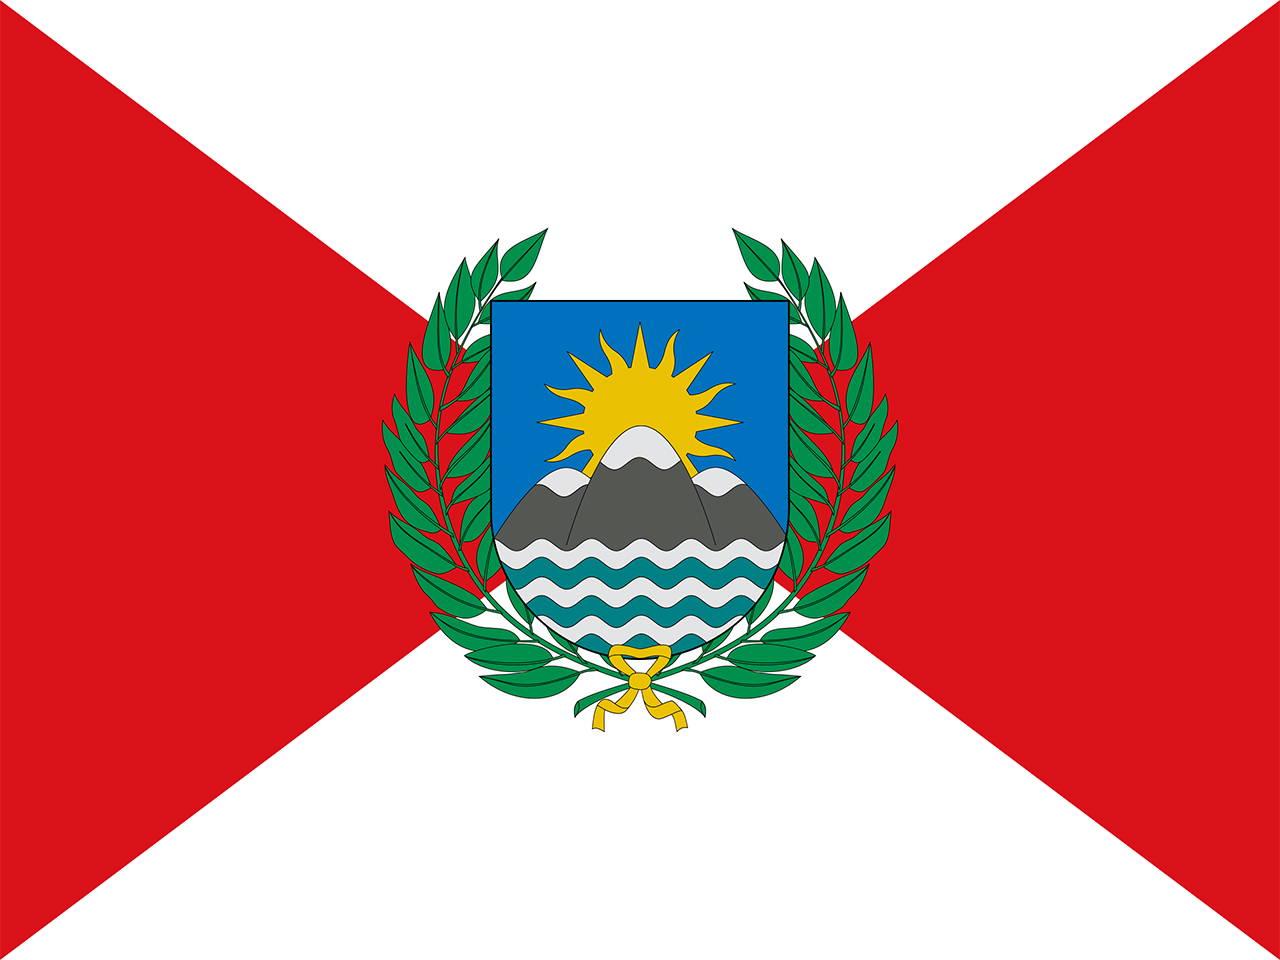 Bandera diseñada por José de San Martín.